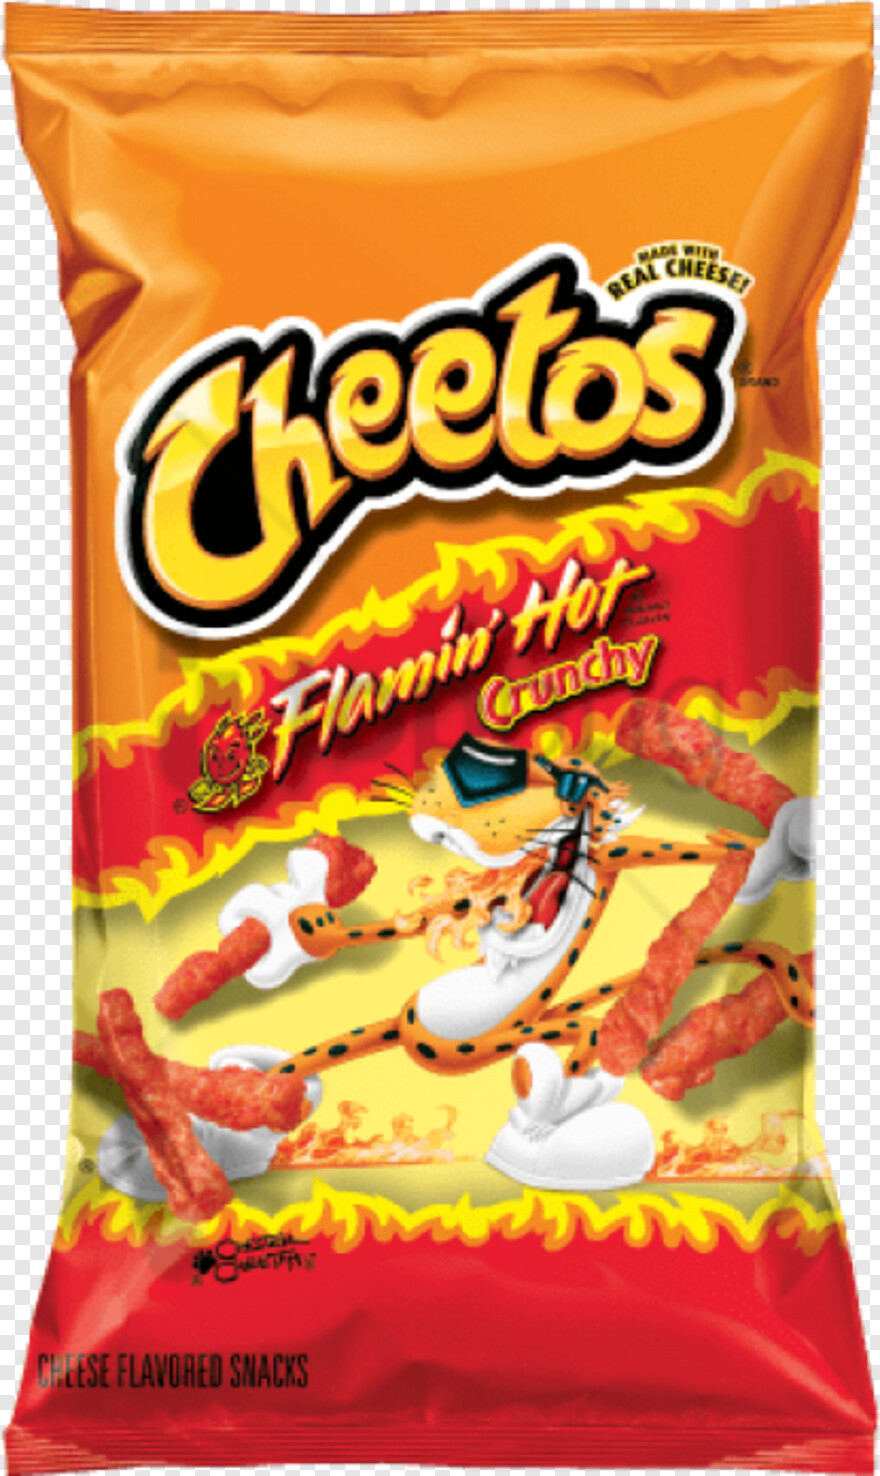 cheetos-logo # 1030164